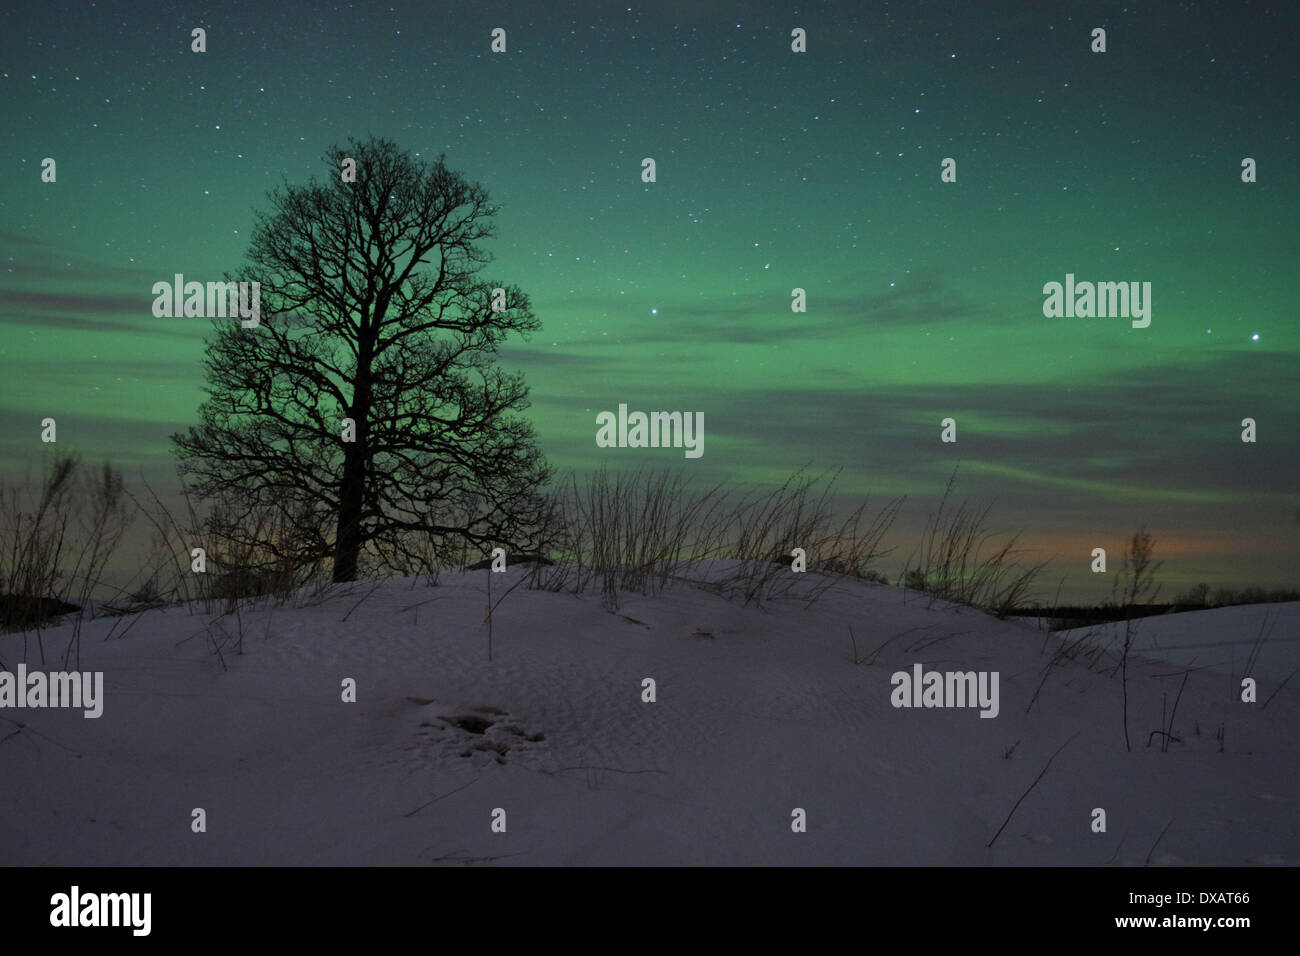 Albero con luci del nord (Aurora Boreale nel cielo. Foto Stock